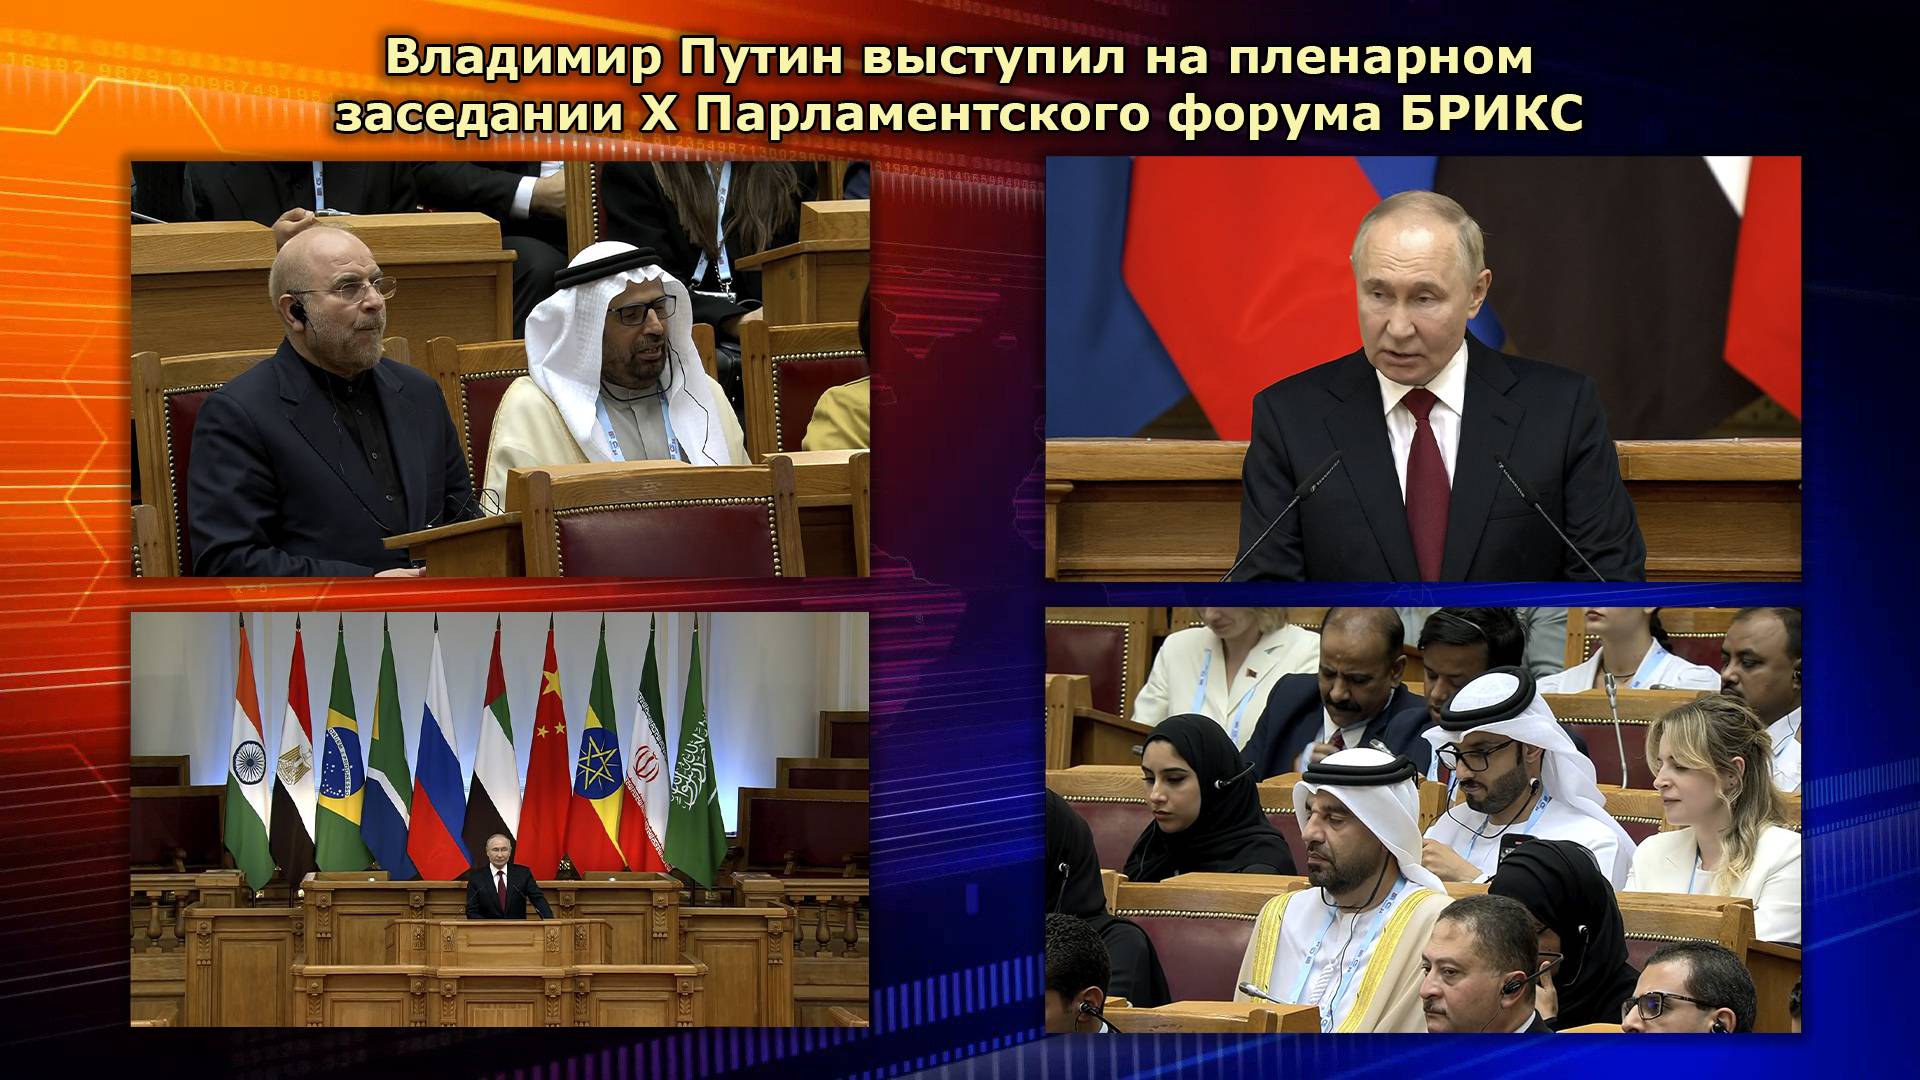 Владимир Путин выступил на пленарном заседании Х Парламентского форума БРИКС #россия #путин #брикс